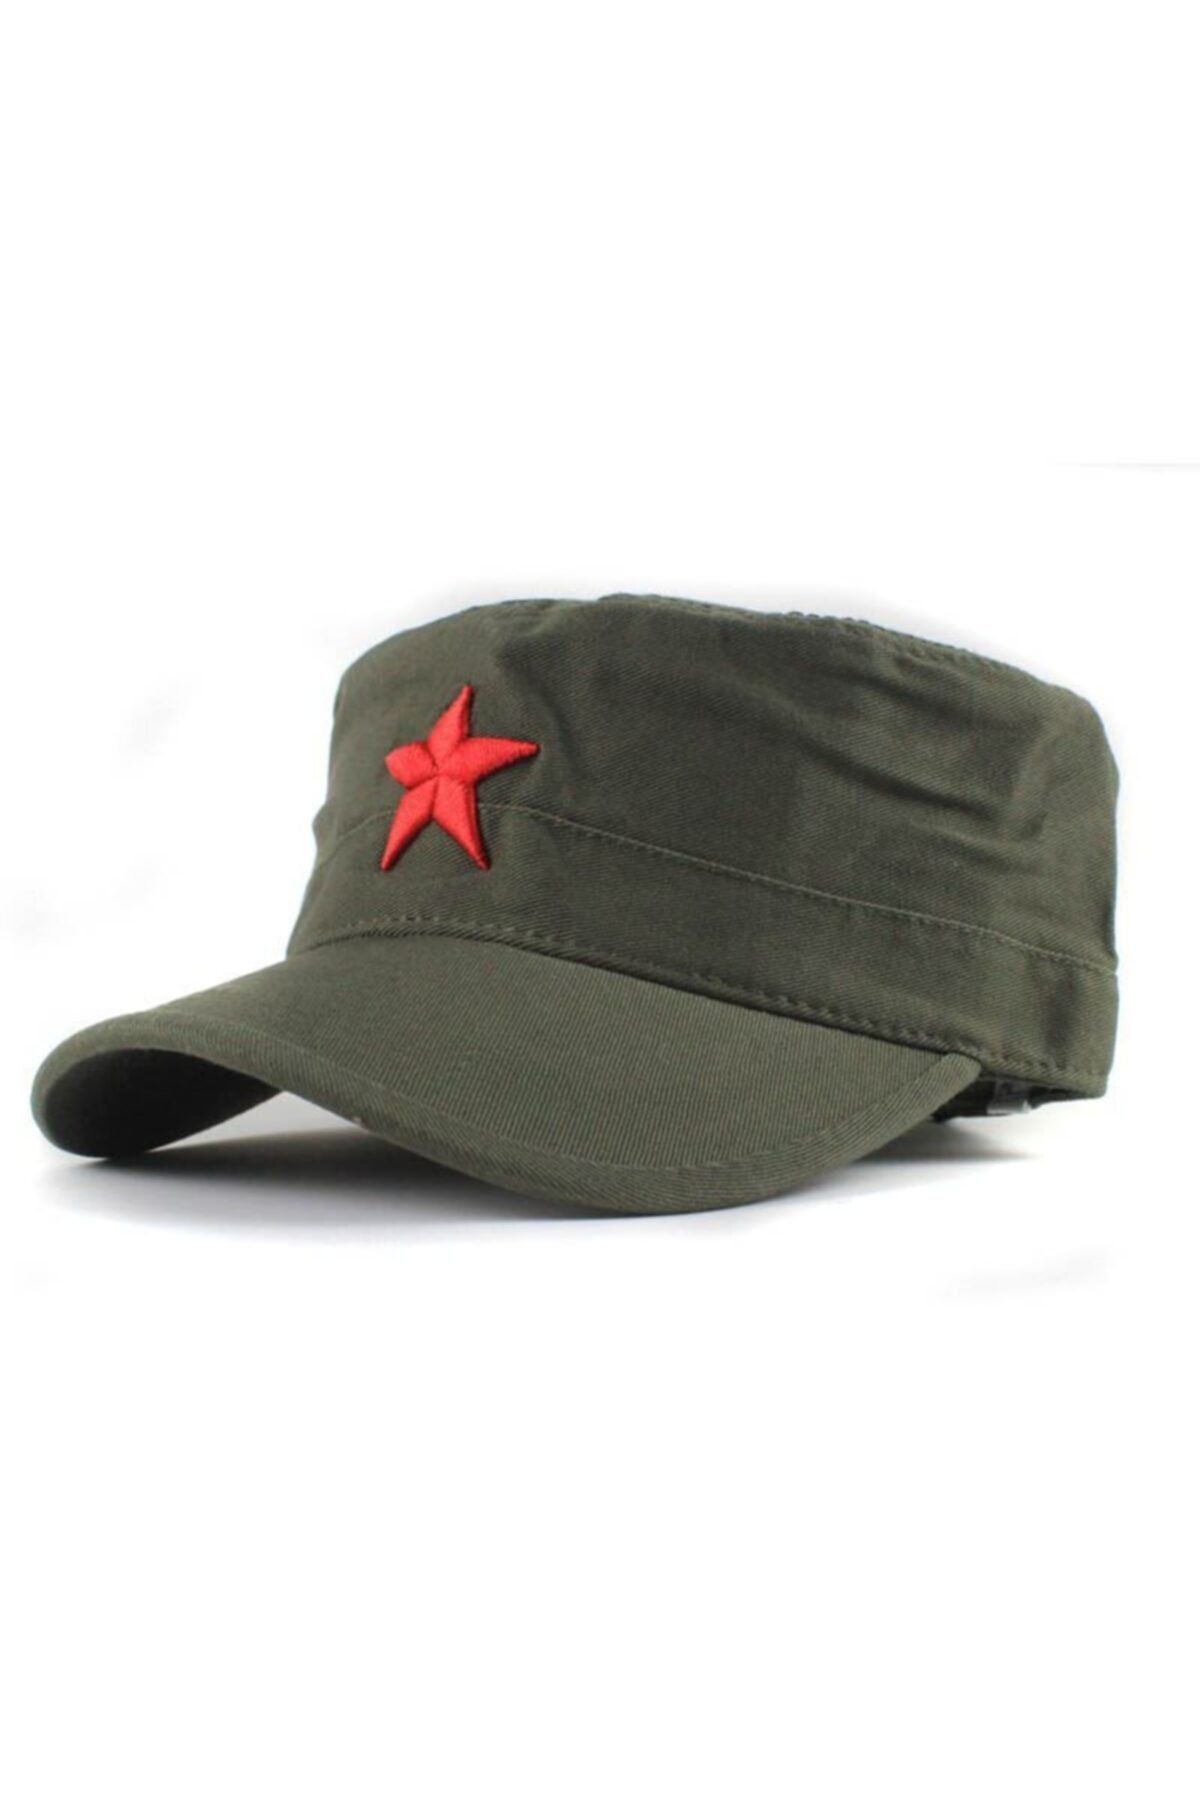 Köstebek Yıldızlı Fidel Castro Che Guevara Şapkası Yeşil Renk